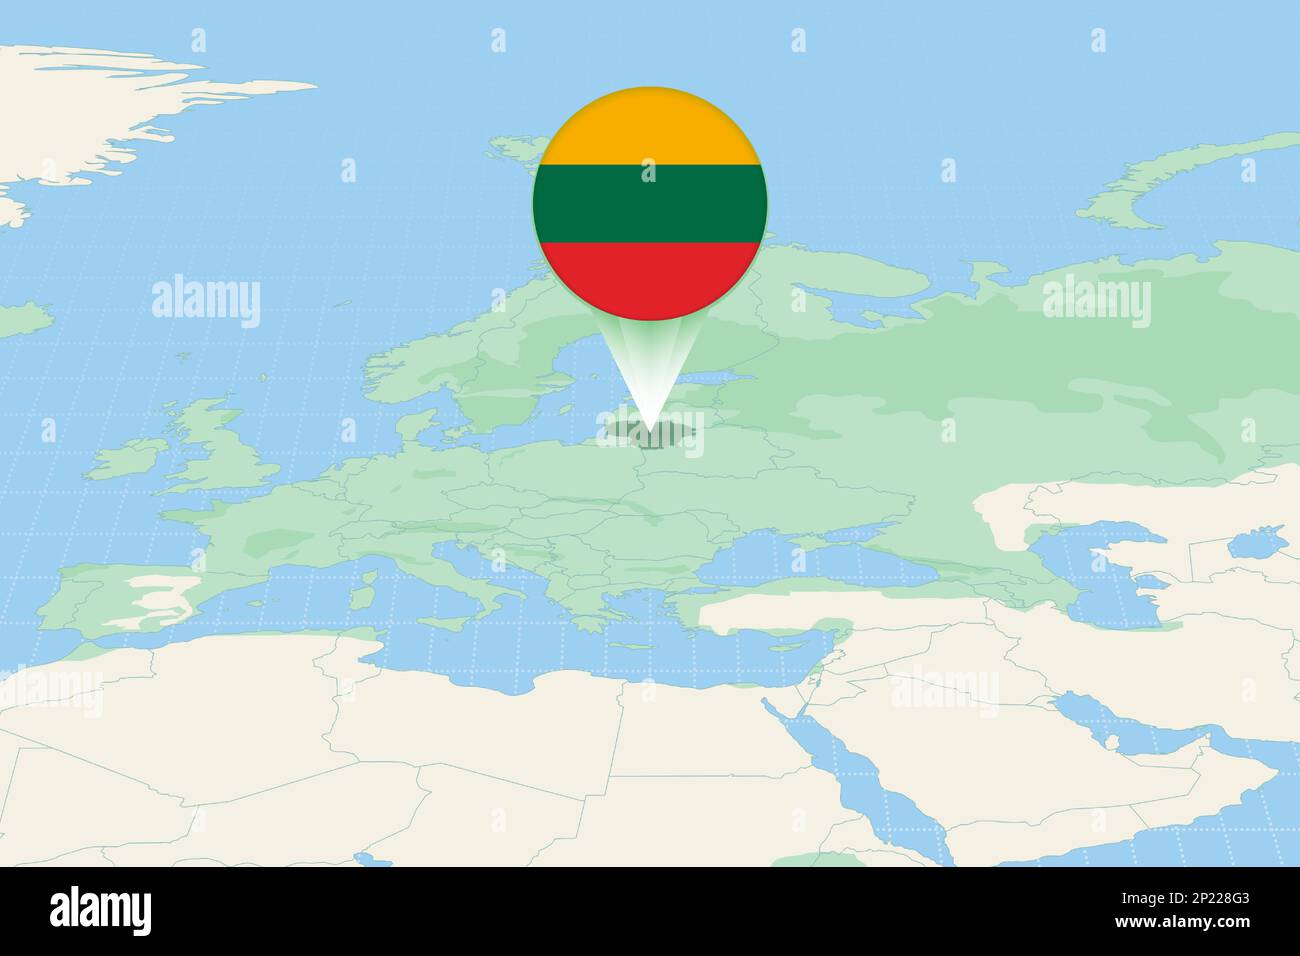 Illustrazione della Lituania con la bandiera. Illustrazione cartografica della Lituania e dei paesi vicini. Mappa vettoriale e flag. Illustrazione Vettoriale